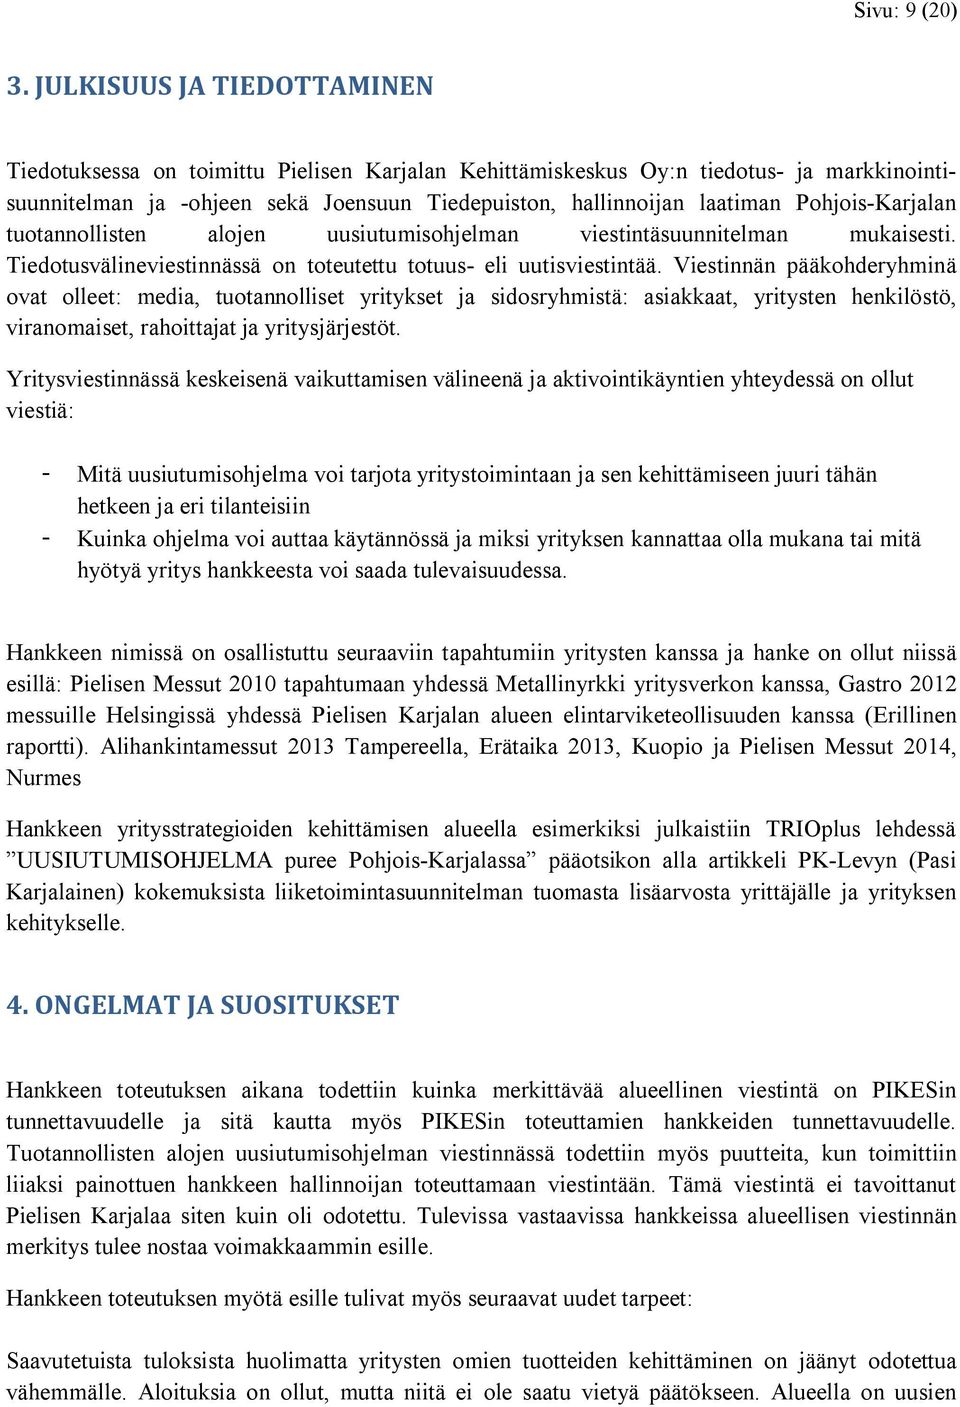 Pohjois-Karjalan tuotannollisten alojen uusiutumisohjelman viestintäsuunnitelman mukaisesti. Tiedotusvälineviestinnässä on toteutettu totuus- eli uutisviestintää.